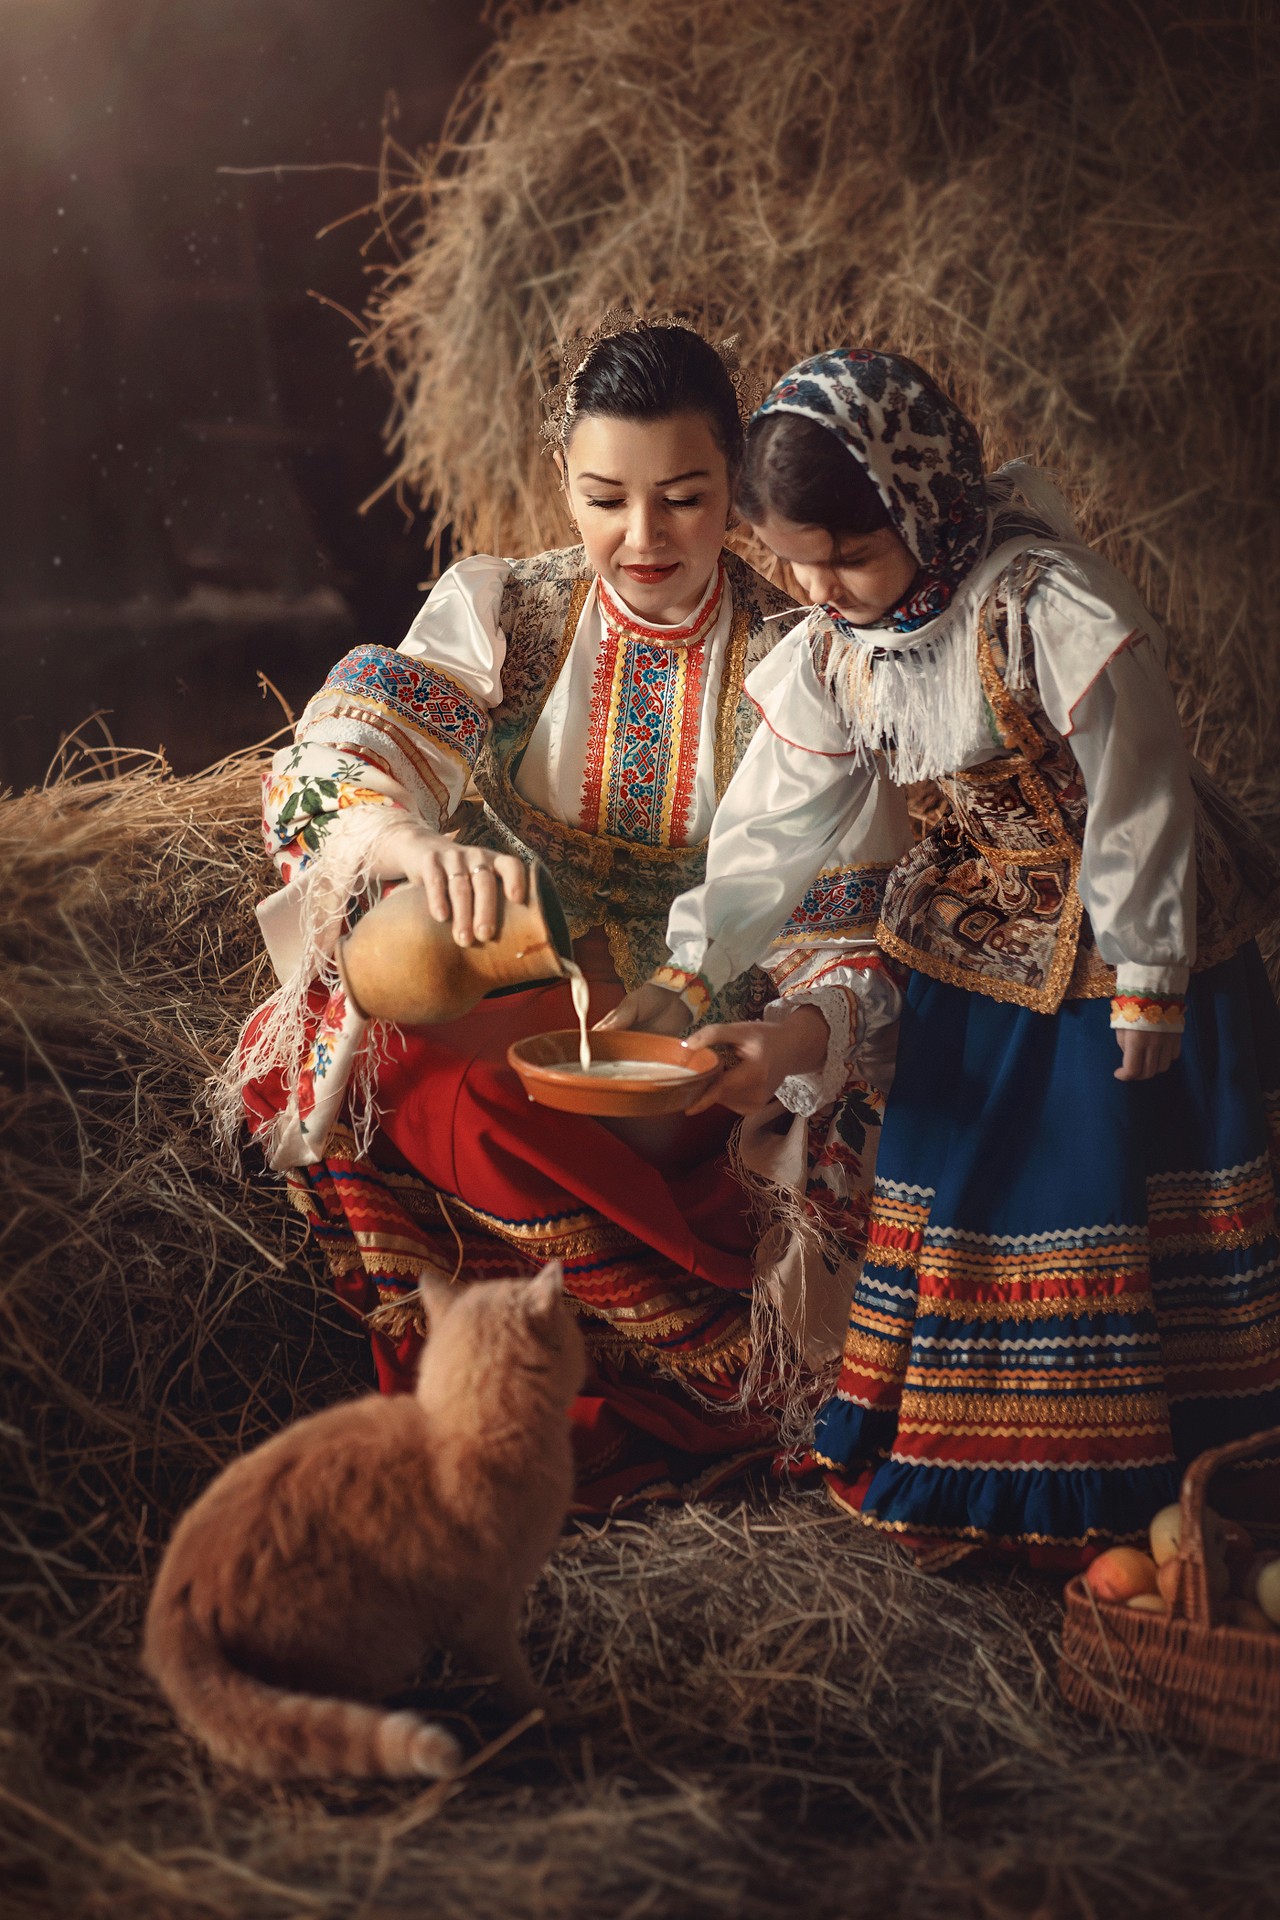 Фото победитель во Всероссийском фотоконкурсе  "мама и дети в национальных костюмах народов России"  (3500 работ было представлено)